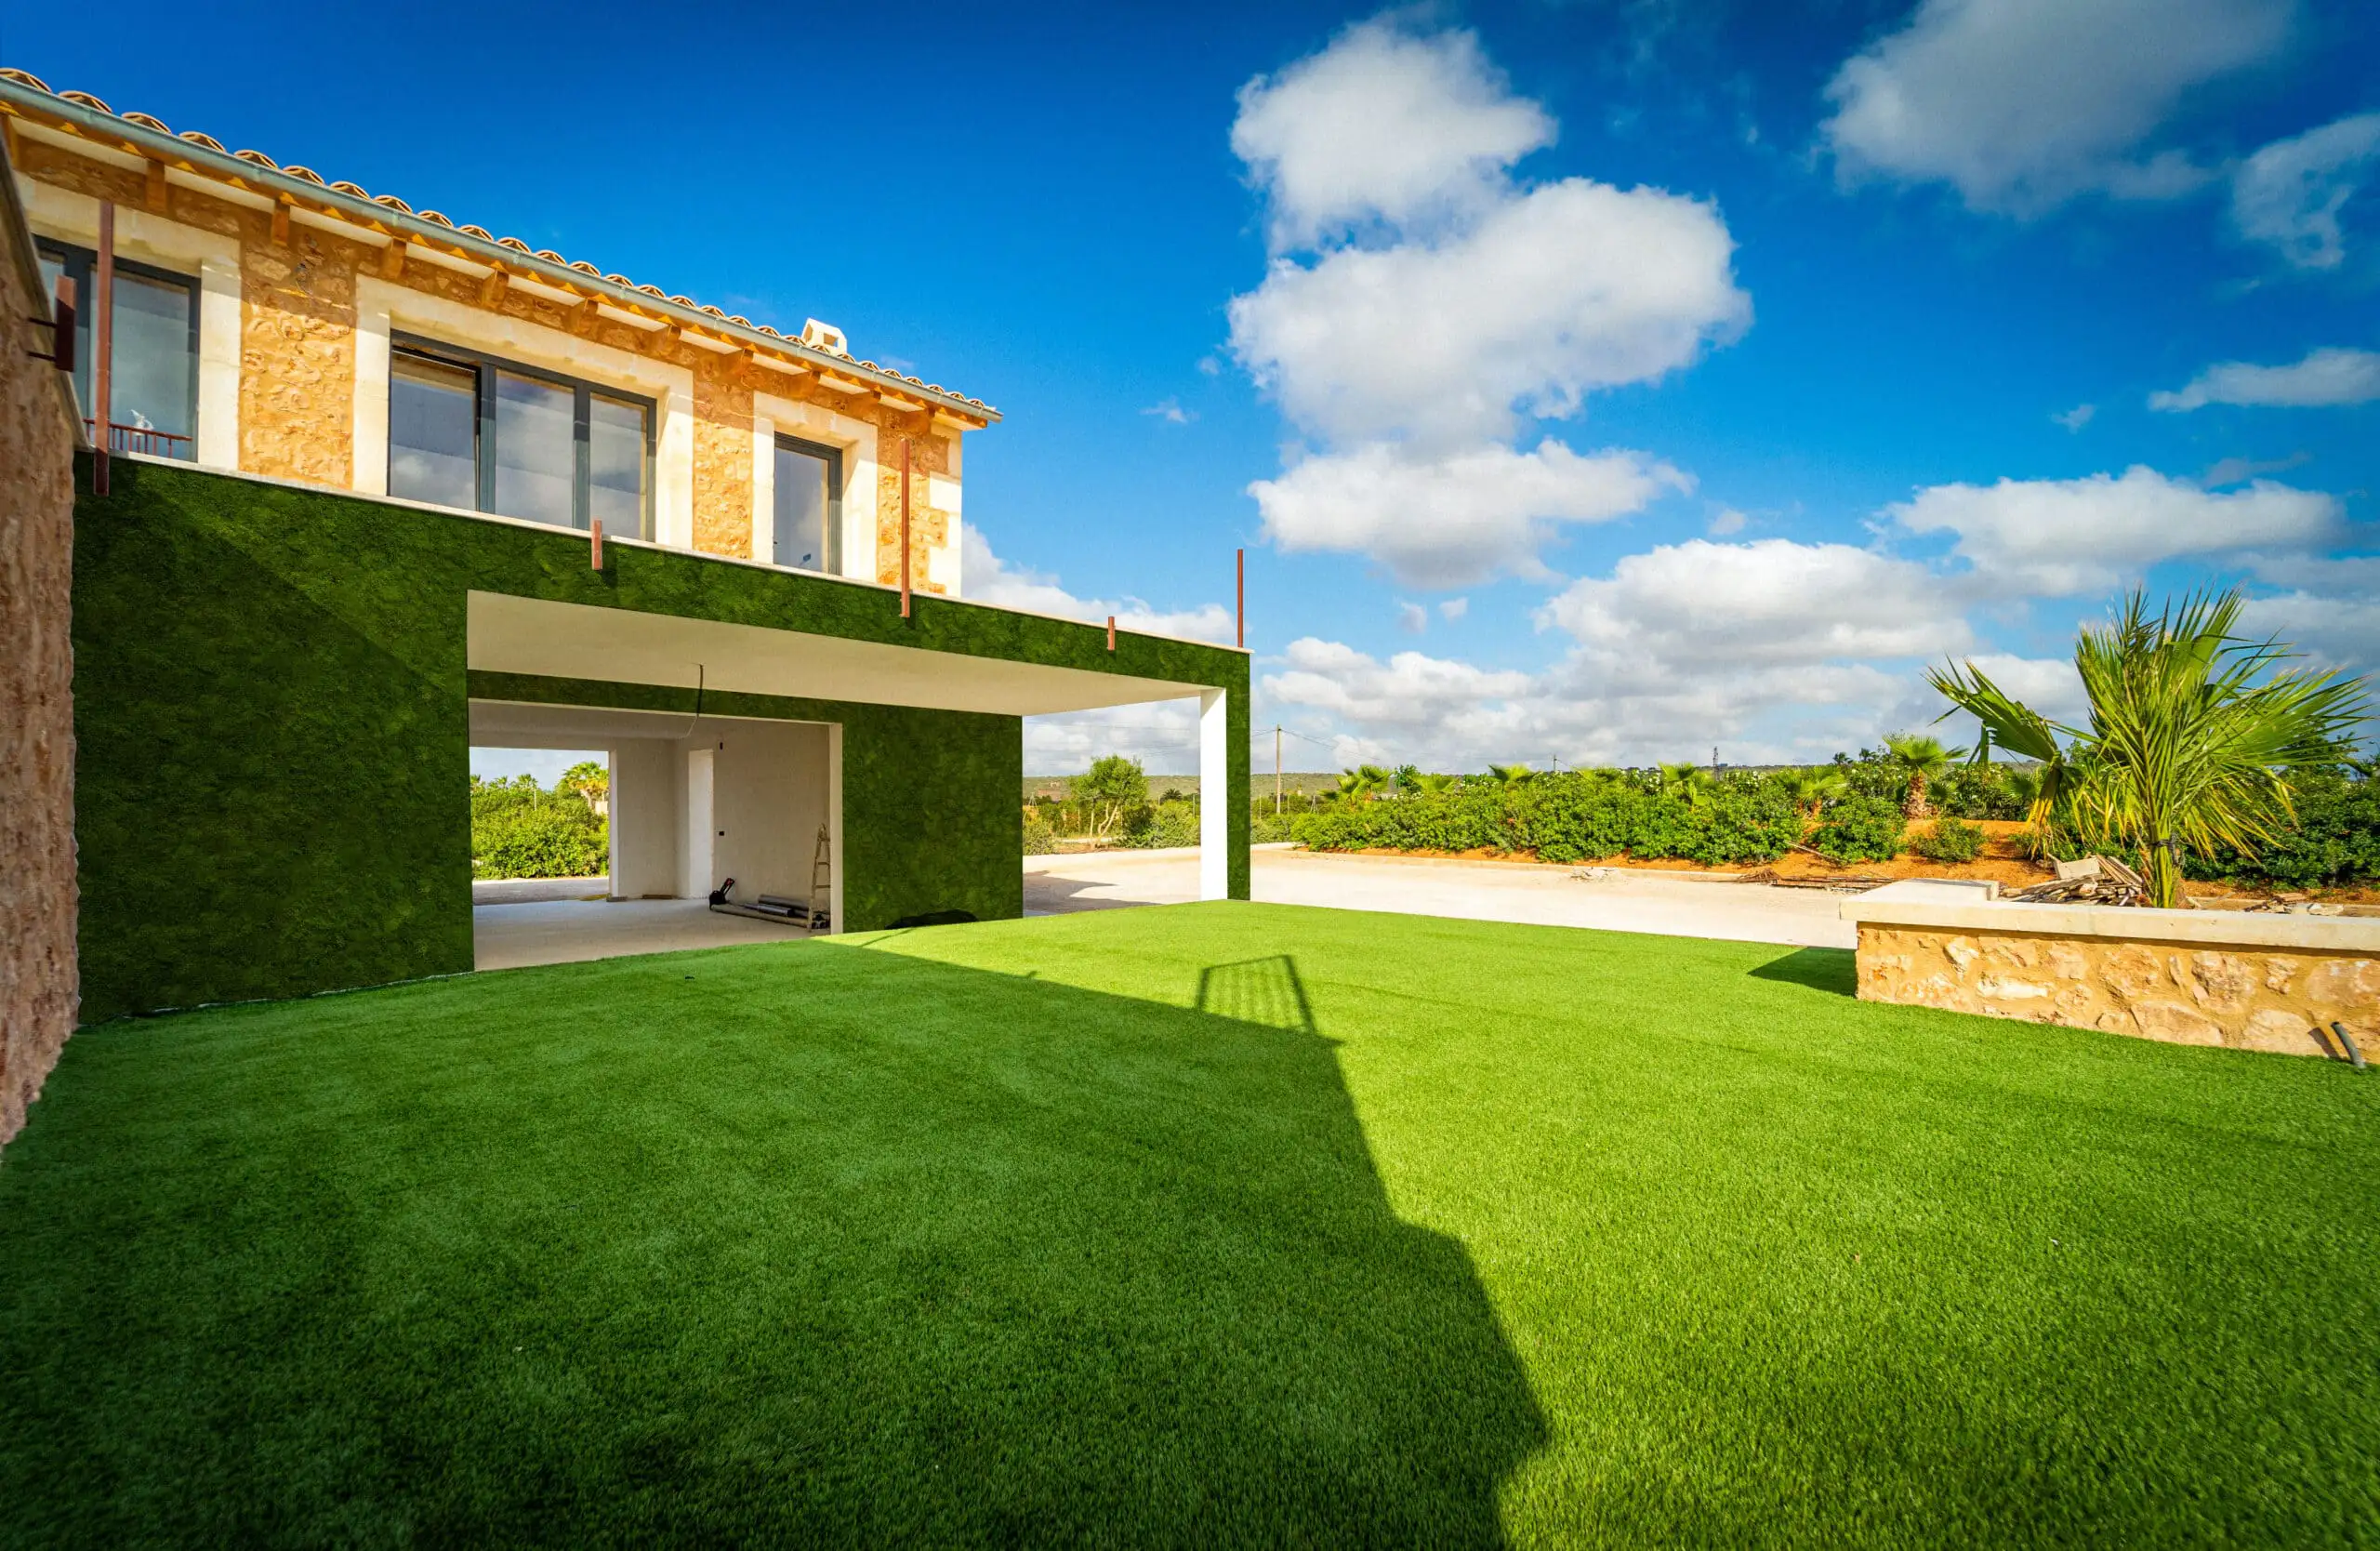 Privathaus mit grüner Moosfassade